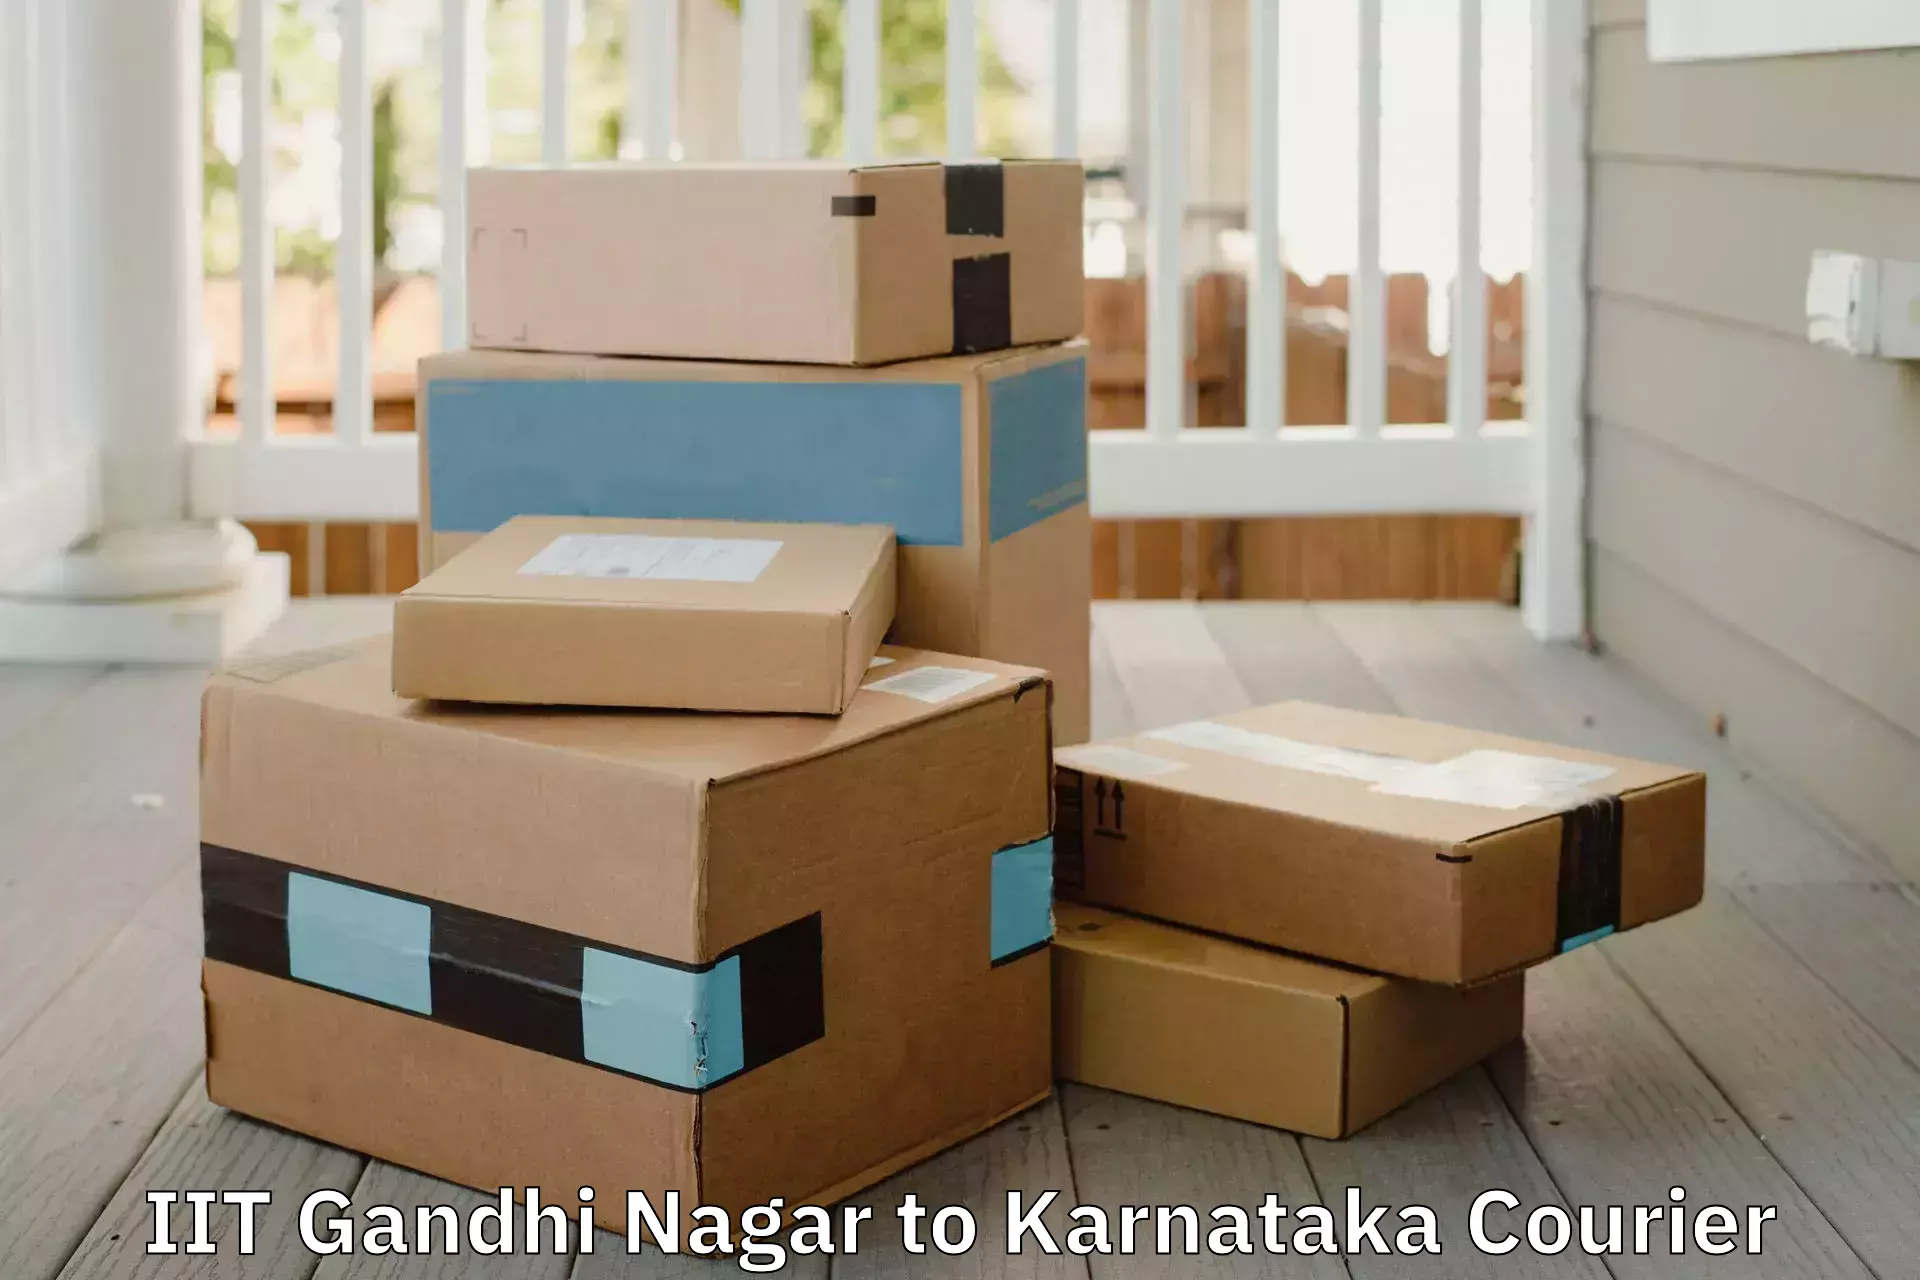 Furniture transport and storage IIT Gandhi Nagar to Shanivarasanthe